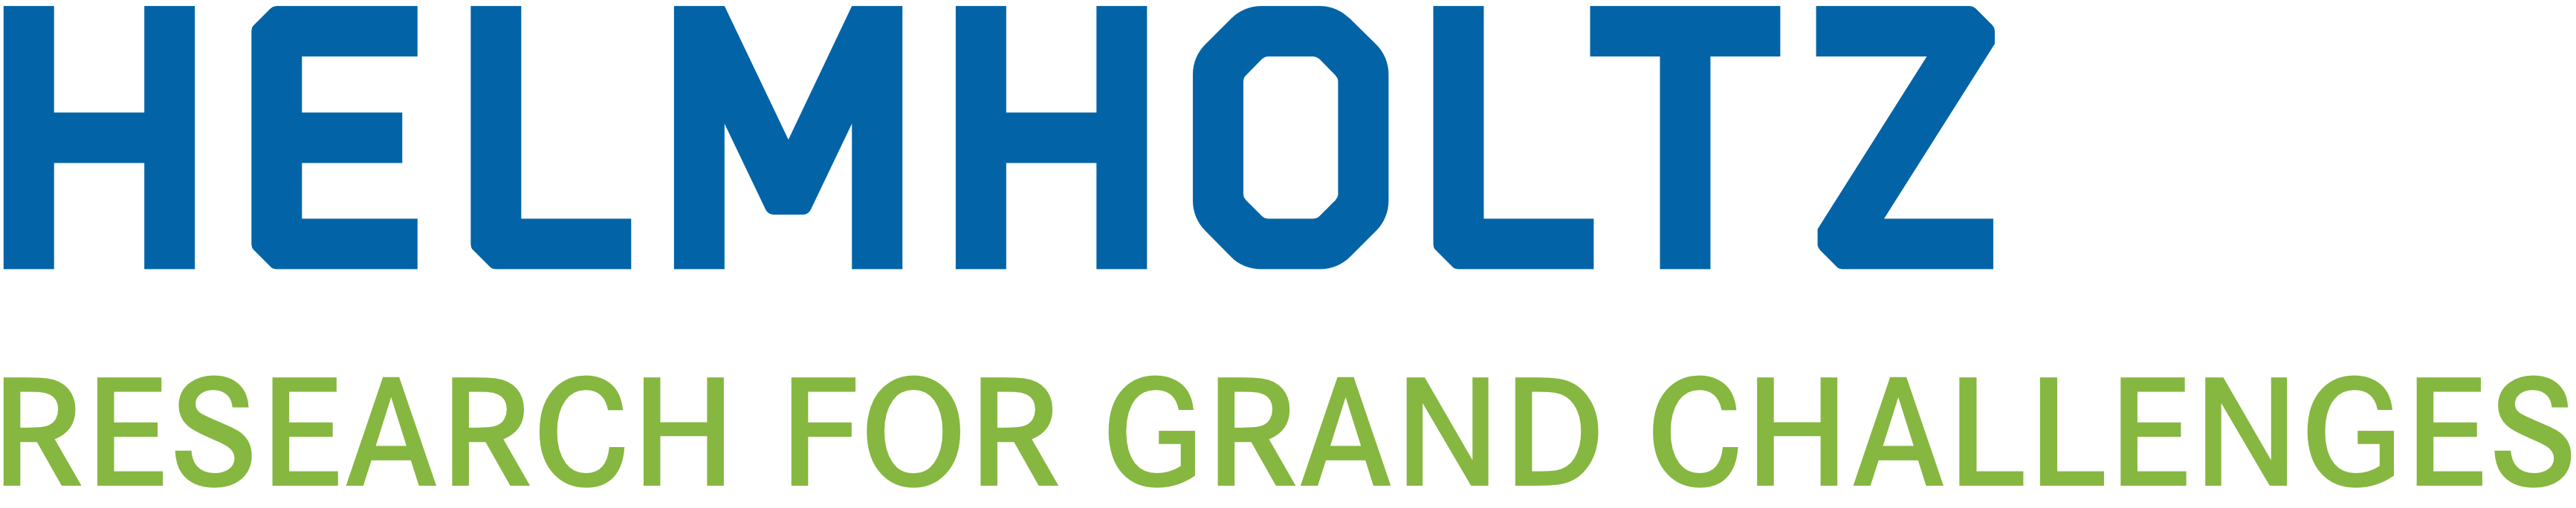 Helmholtz Association (logo)